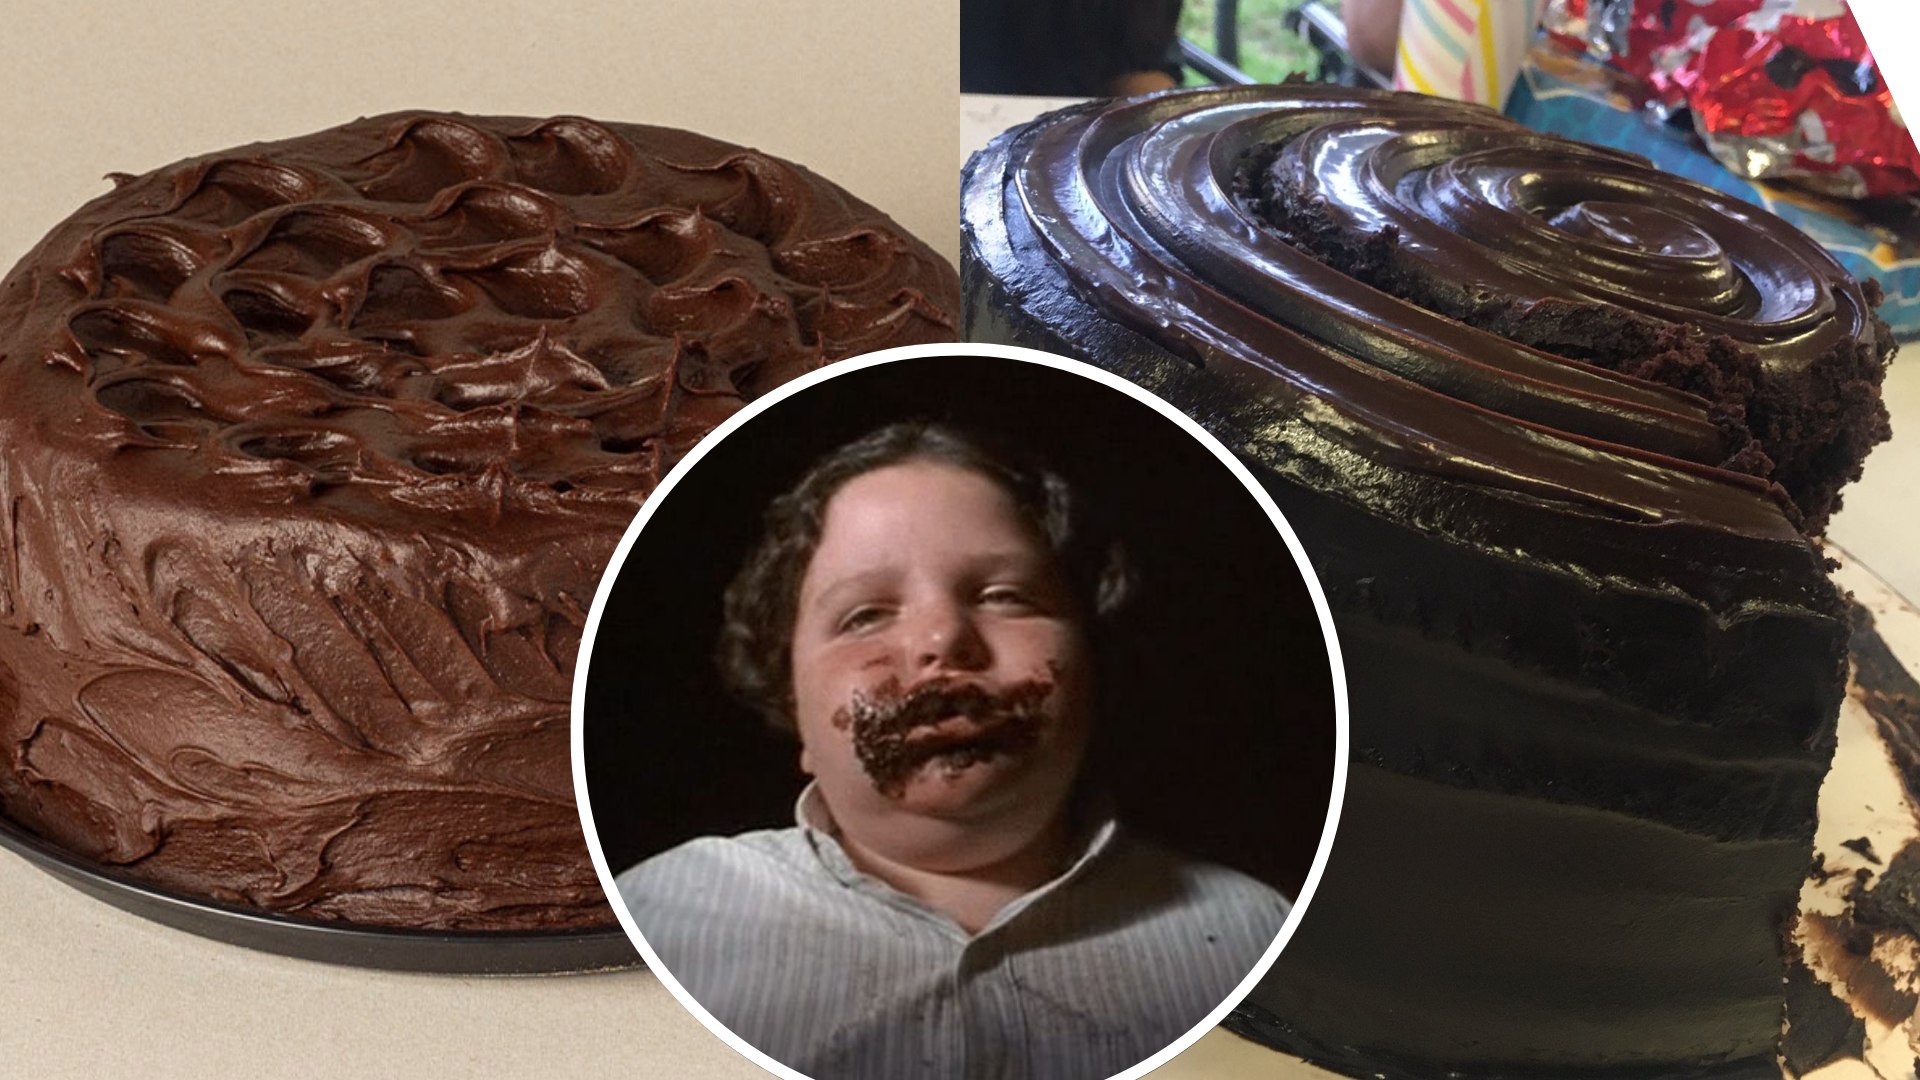 Mejor pastel de chocolate? Costco, Sam's Club, La Esperanza y Walmart  pelean el puesto